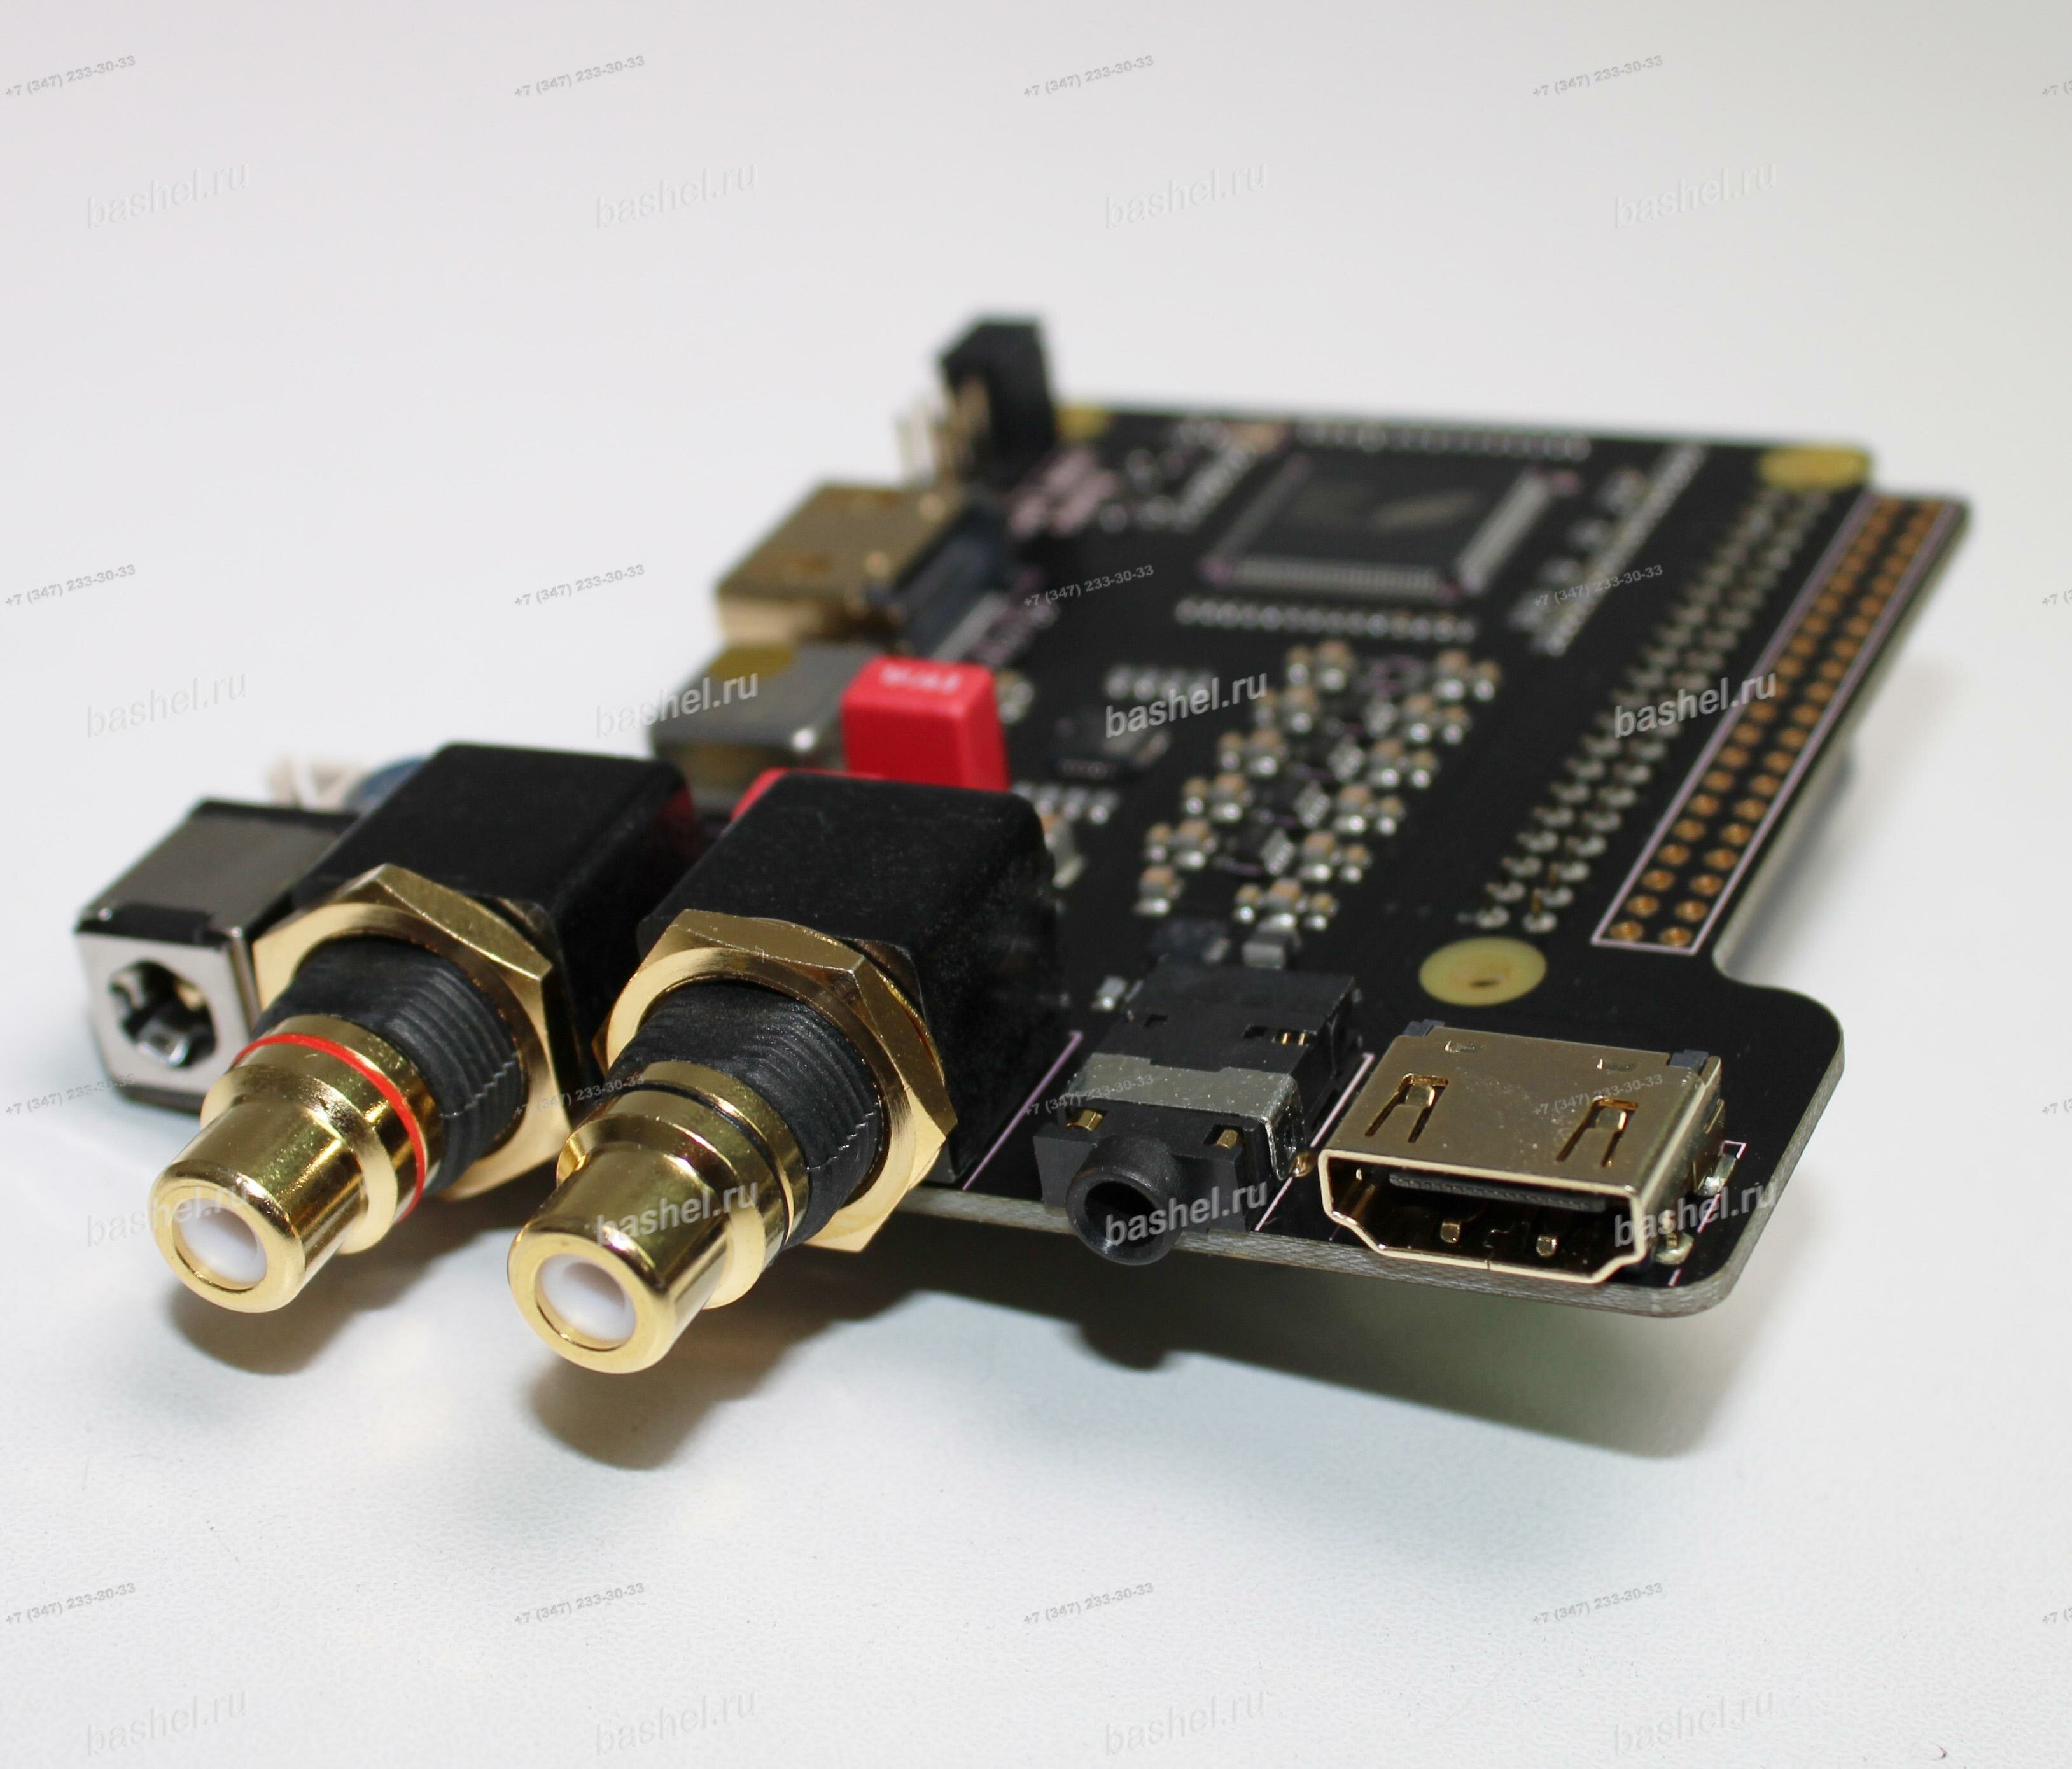 Модуль высококачественного 2х-канального аудио HiFi ЦАП SupTronics X4000 (Питание внеш: 5В, SPDIF, RCA, jack 3.5, HDMI- электротовар